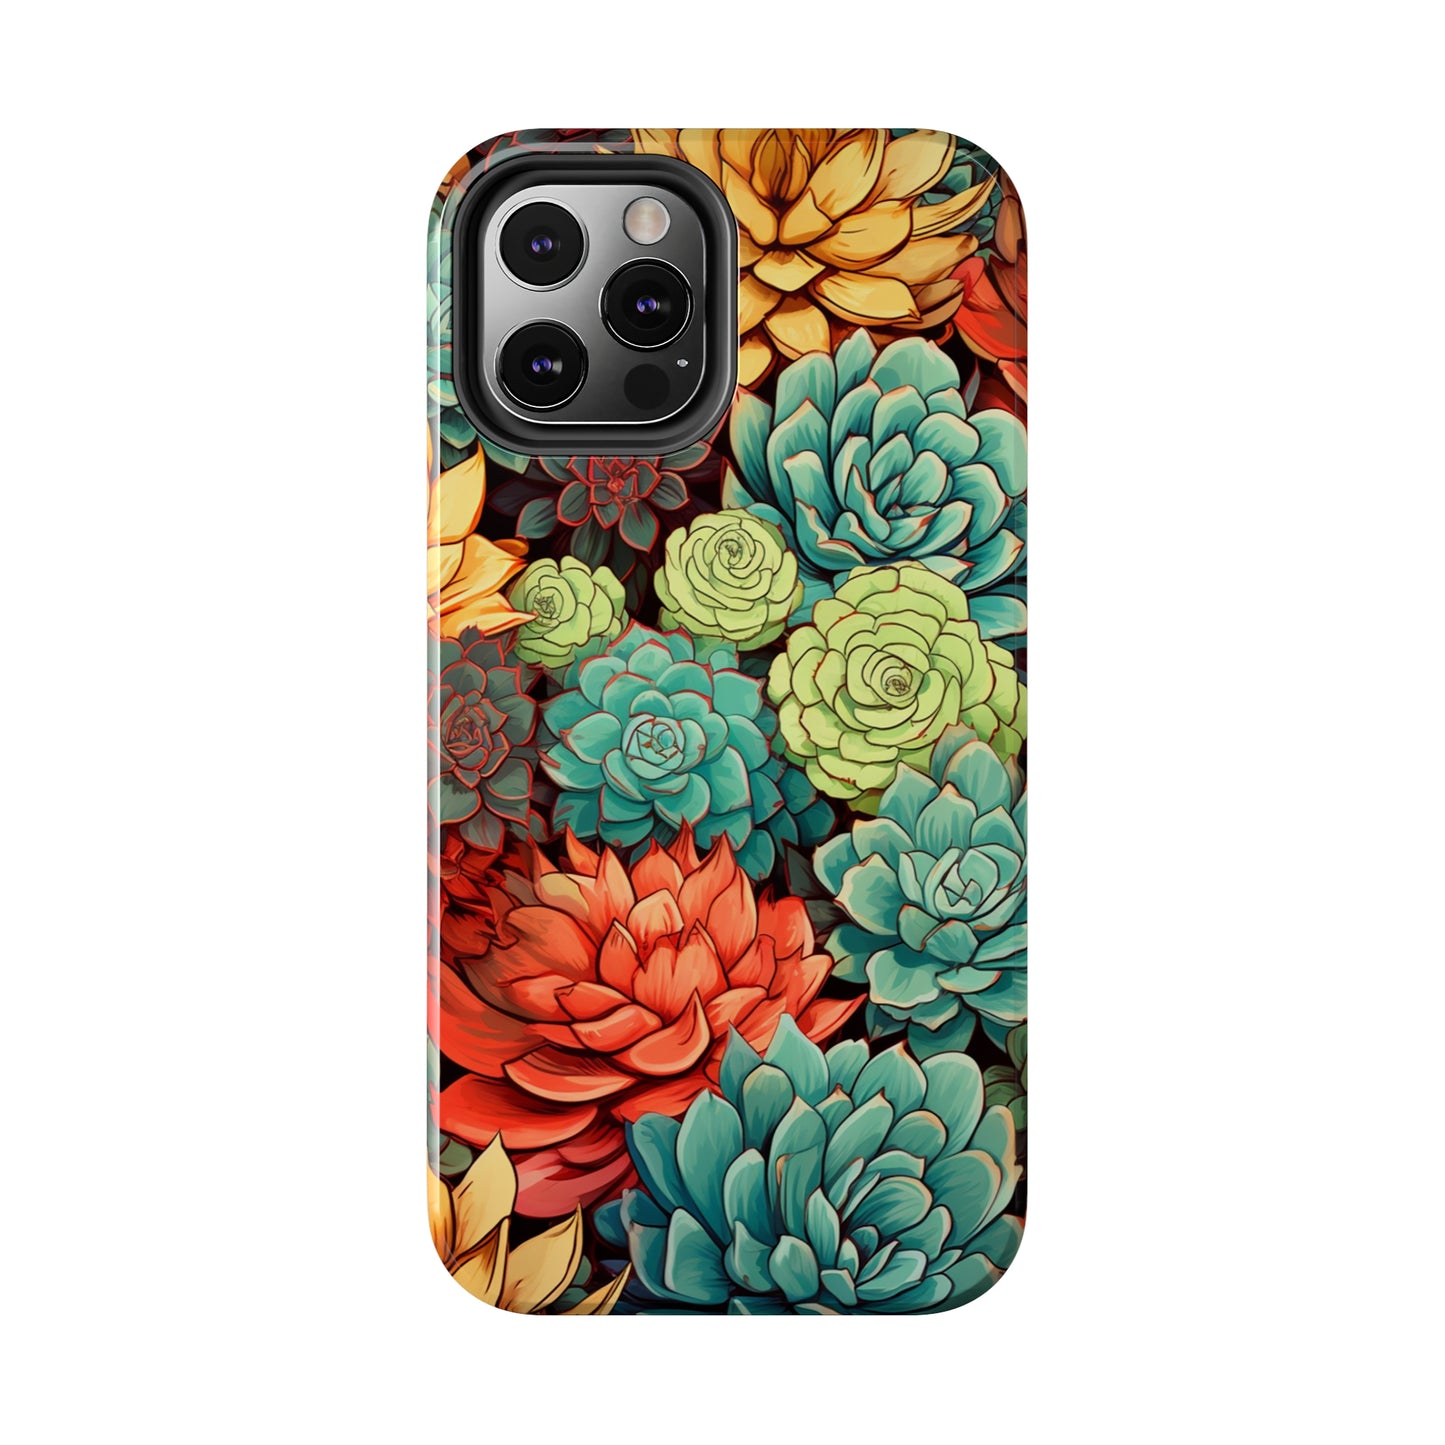 Cactus phone case